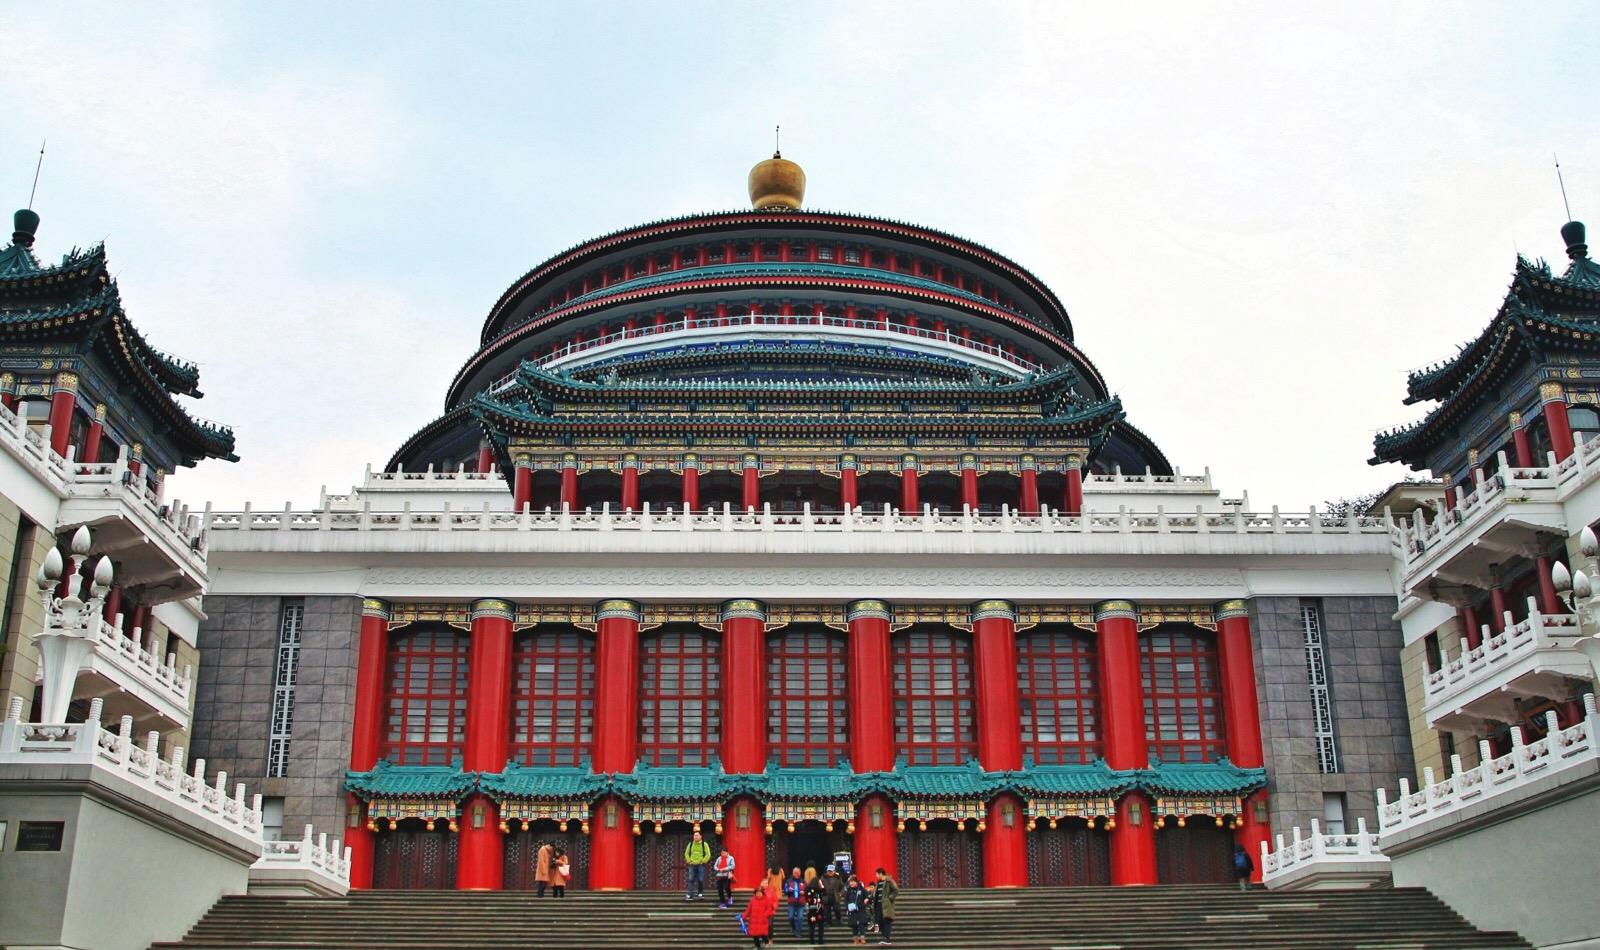 人民大礼堂位于人民路，建于1950年代，是一座精美的仿古民族建筑群，也是重庆的标志建筑物之一。大礼堂采用了明清的建筑特色，传统的中轴线对称，在外观上仿造北京天坛祈年殿。大礼堂对面是中国三峡博物馆，可以一并游玩。